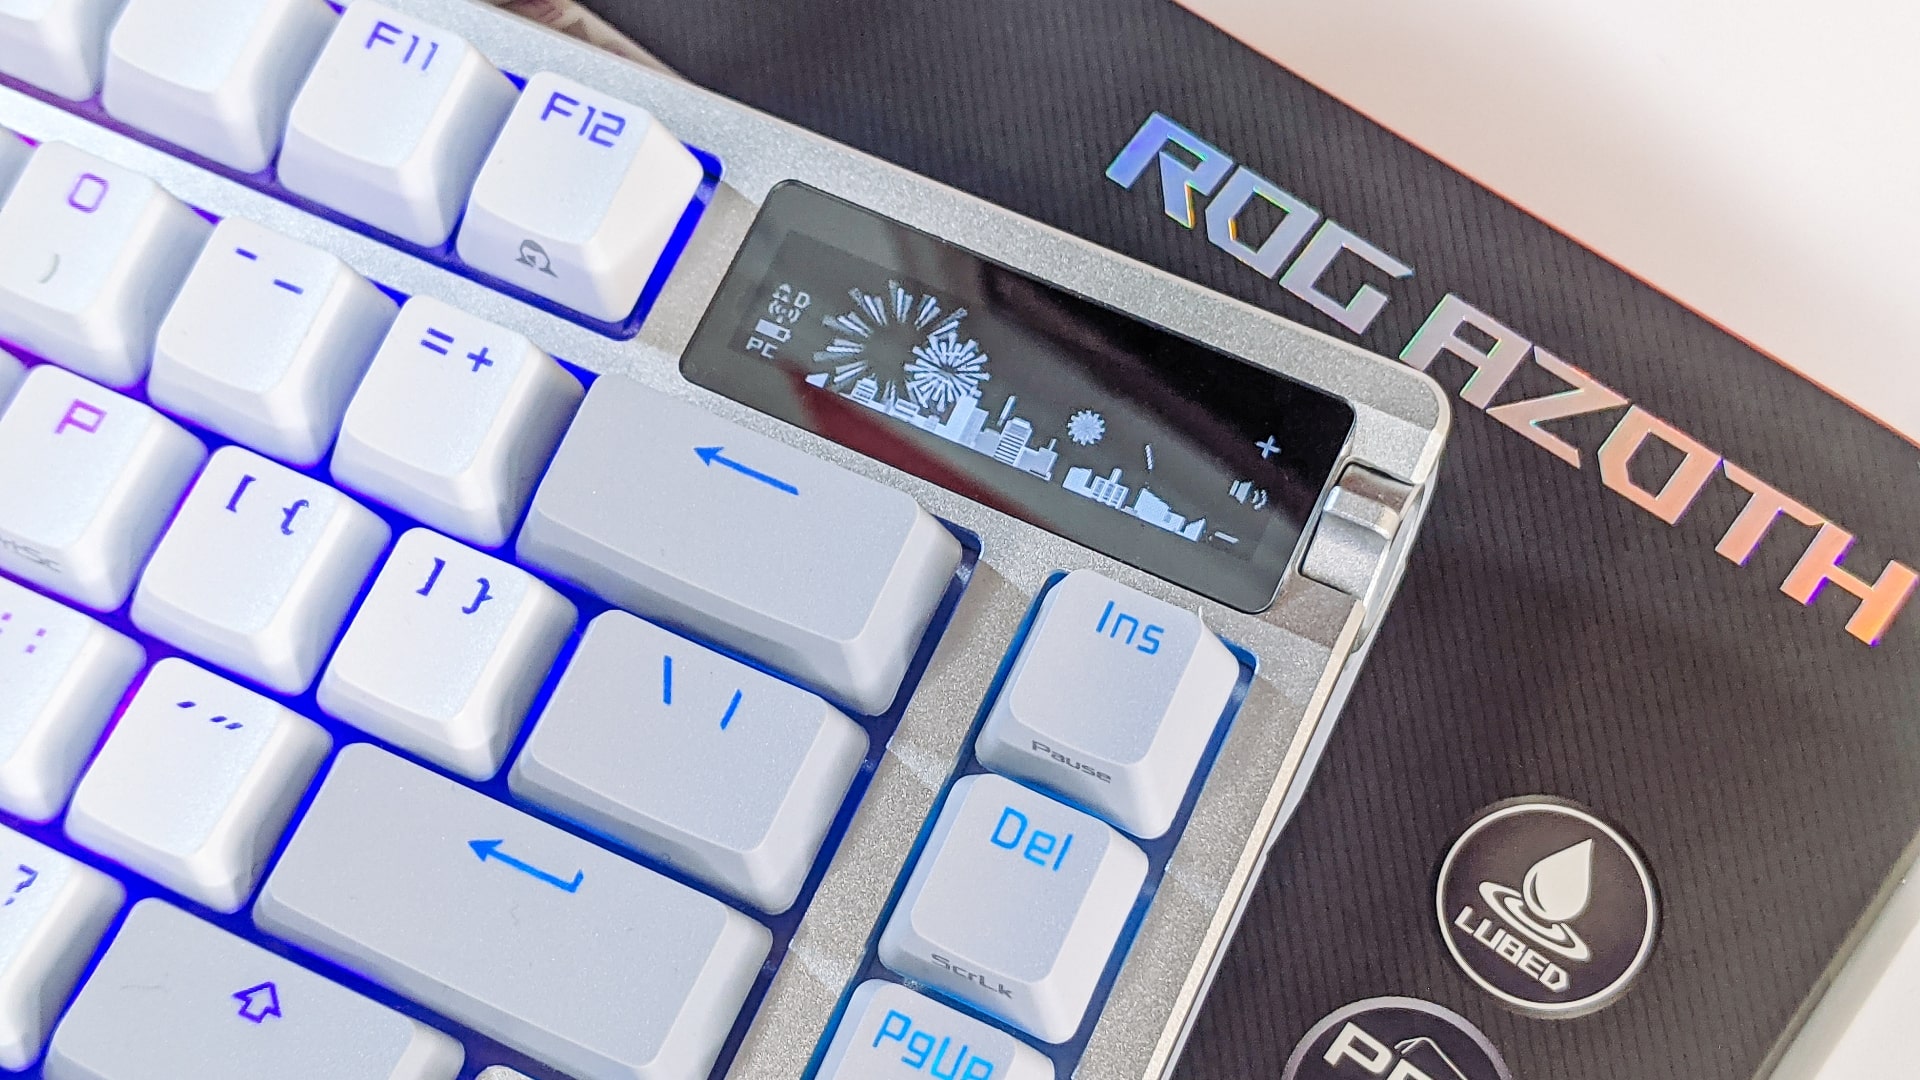 Test de l'Asus ROG Azoth : notre avis sur ce clavier gamer